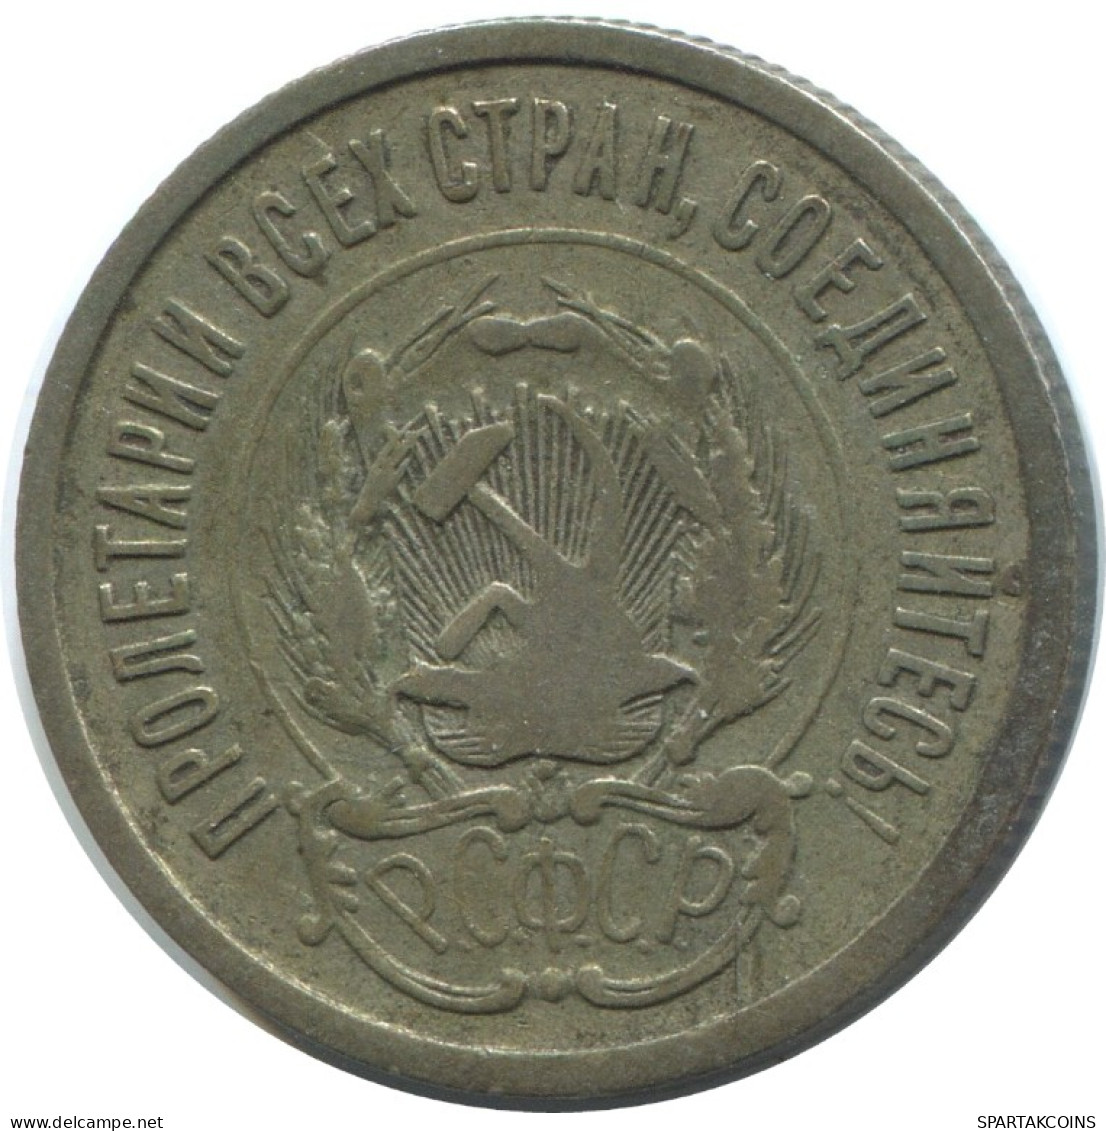 20 KOPEKS 1923 RUSSIA RSFSR SILVER Coin HIGH GRADE #AF422.4.U.A - Russland